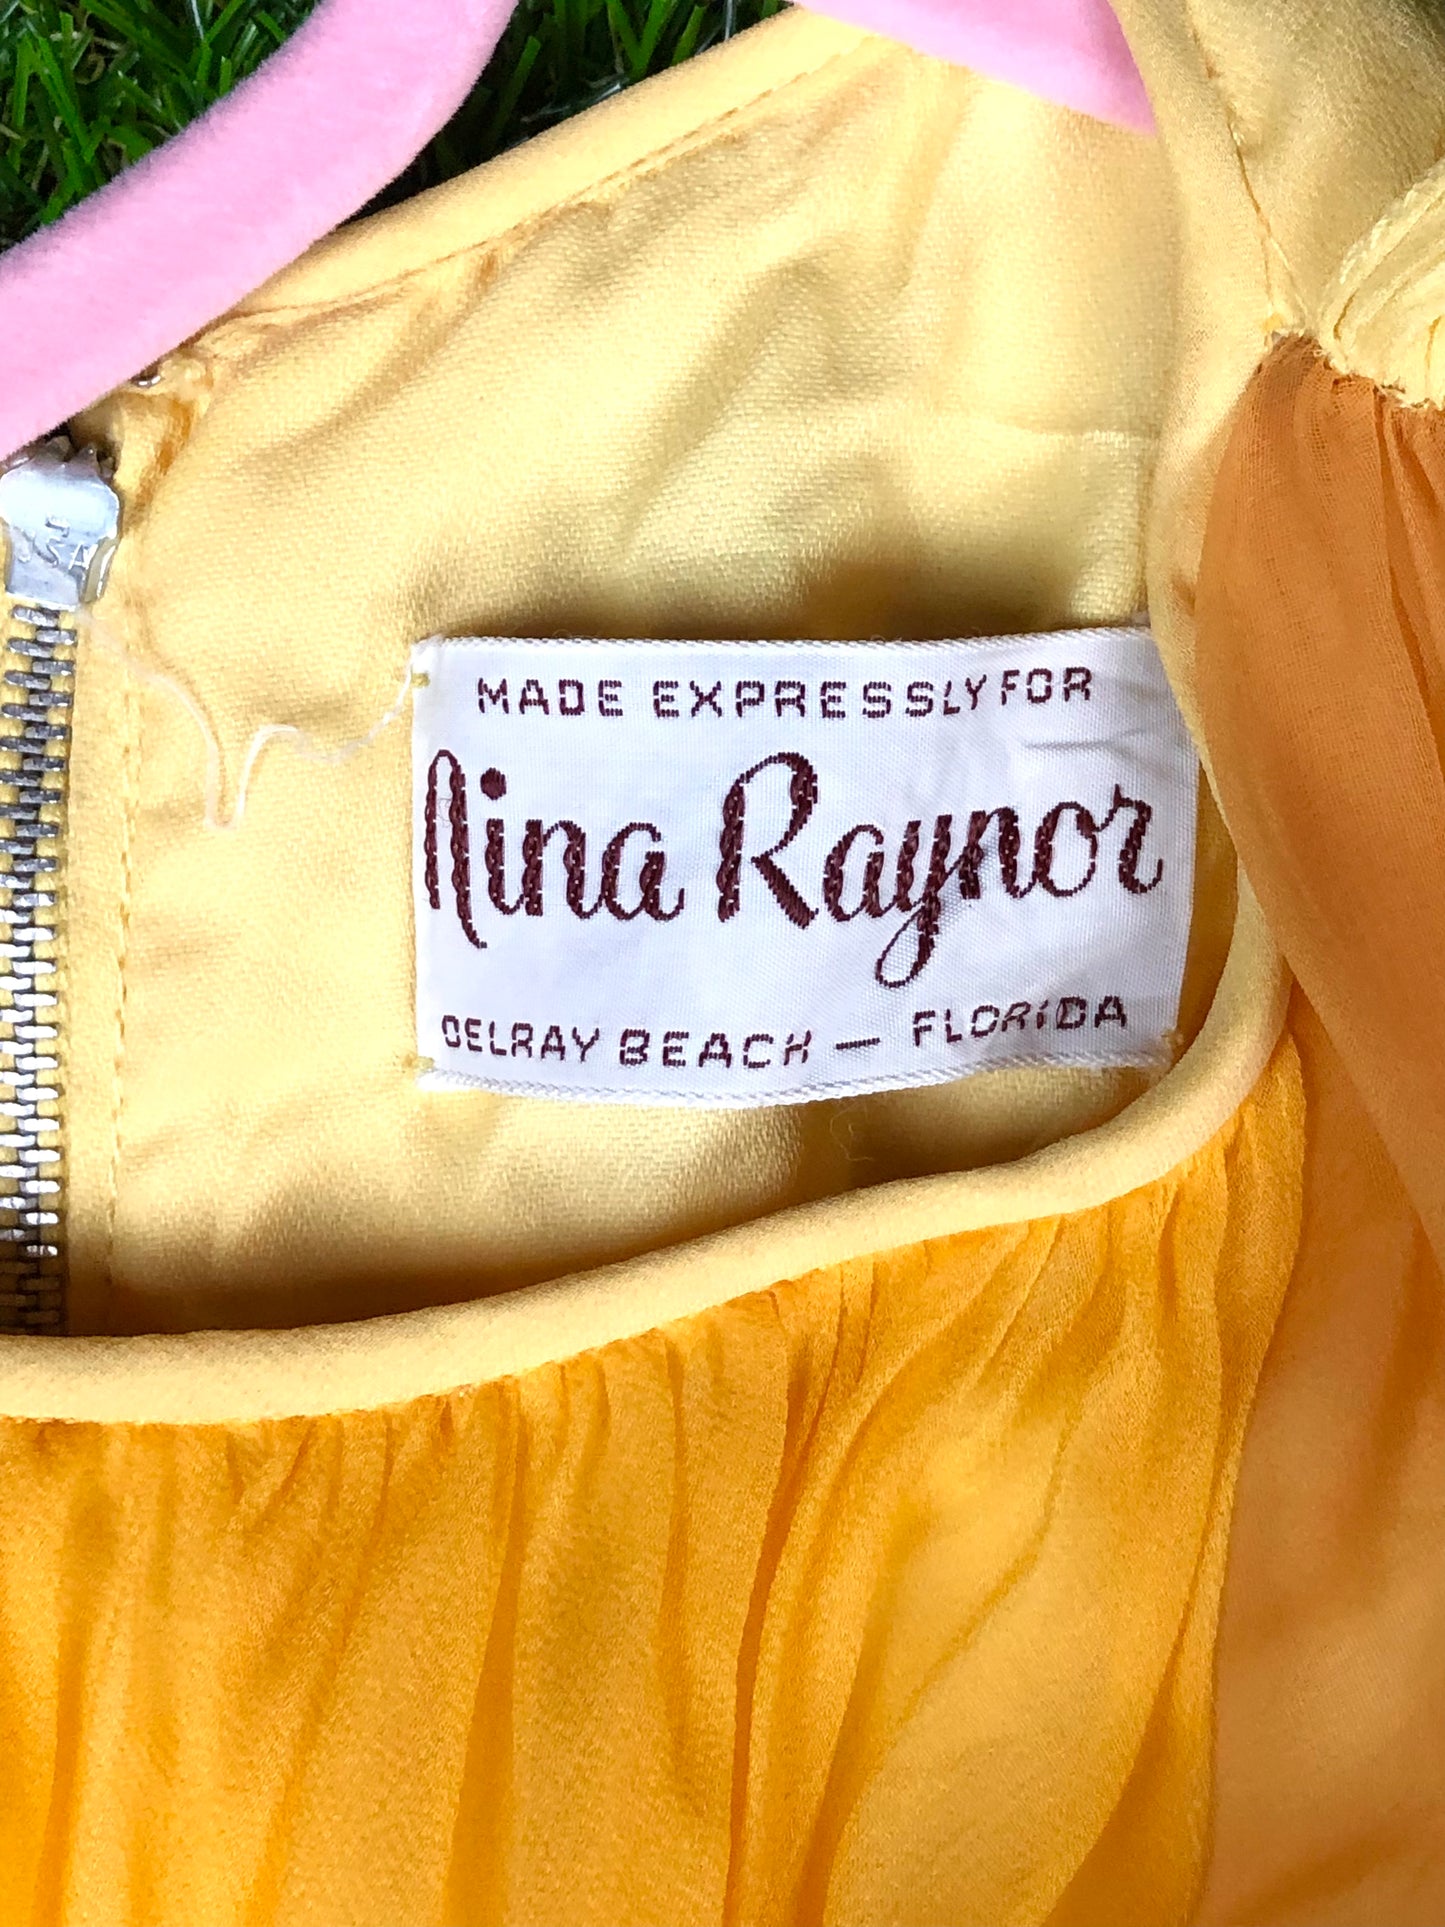 1970's Glamorous Yellow Rhinestone Chiffon Pantsuit